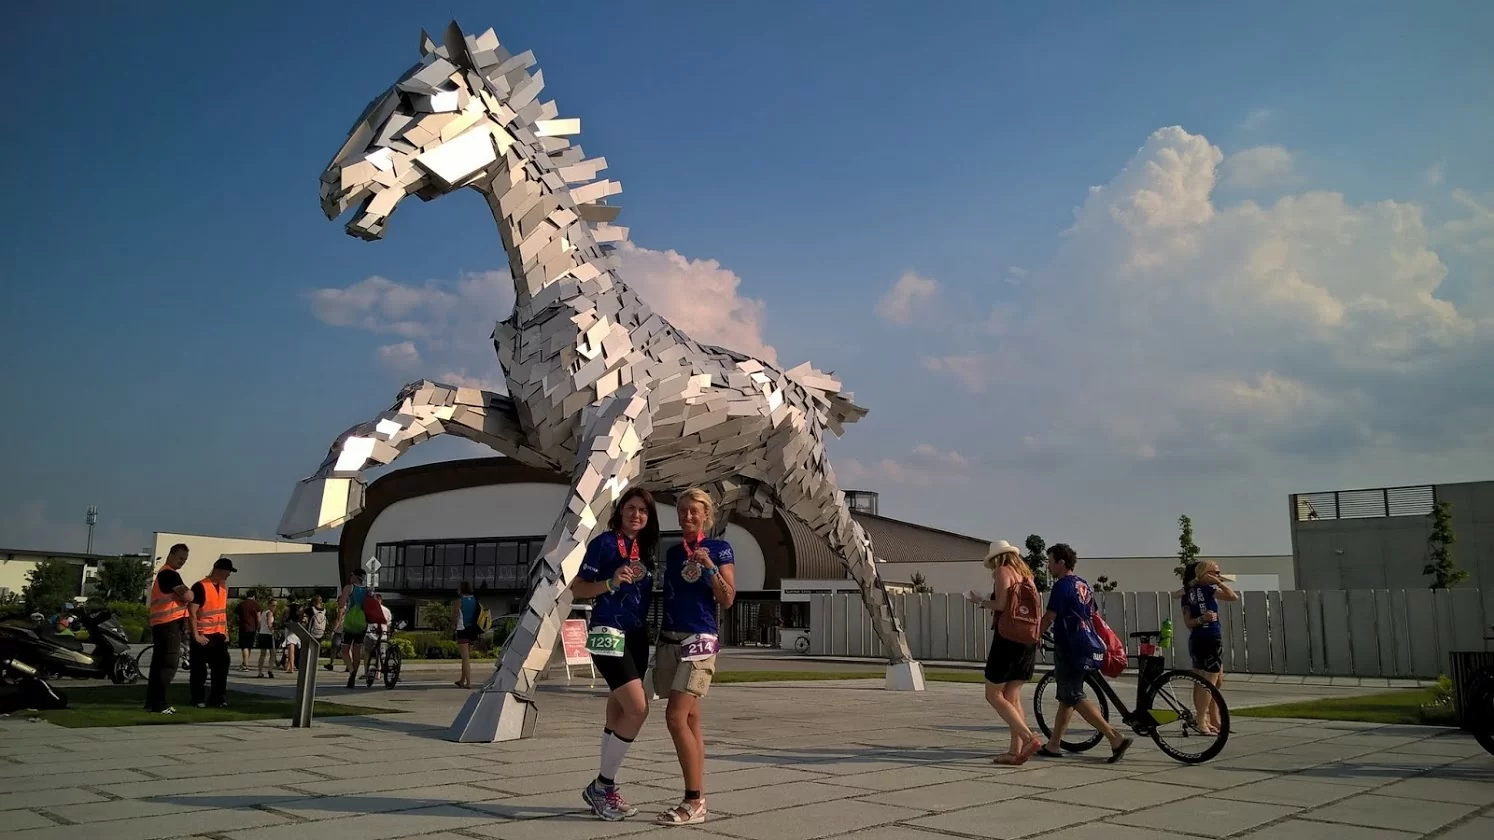 Скульптура скачущей лошади в Шаморине